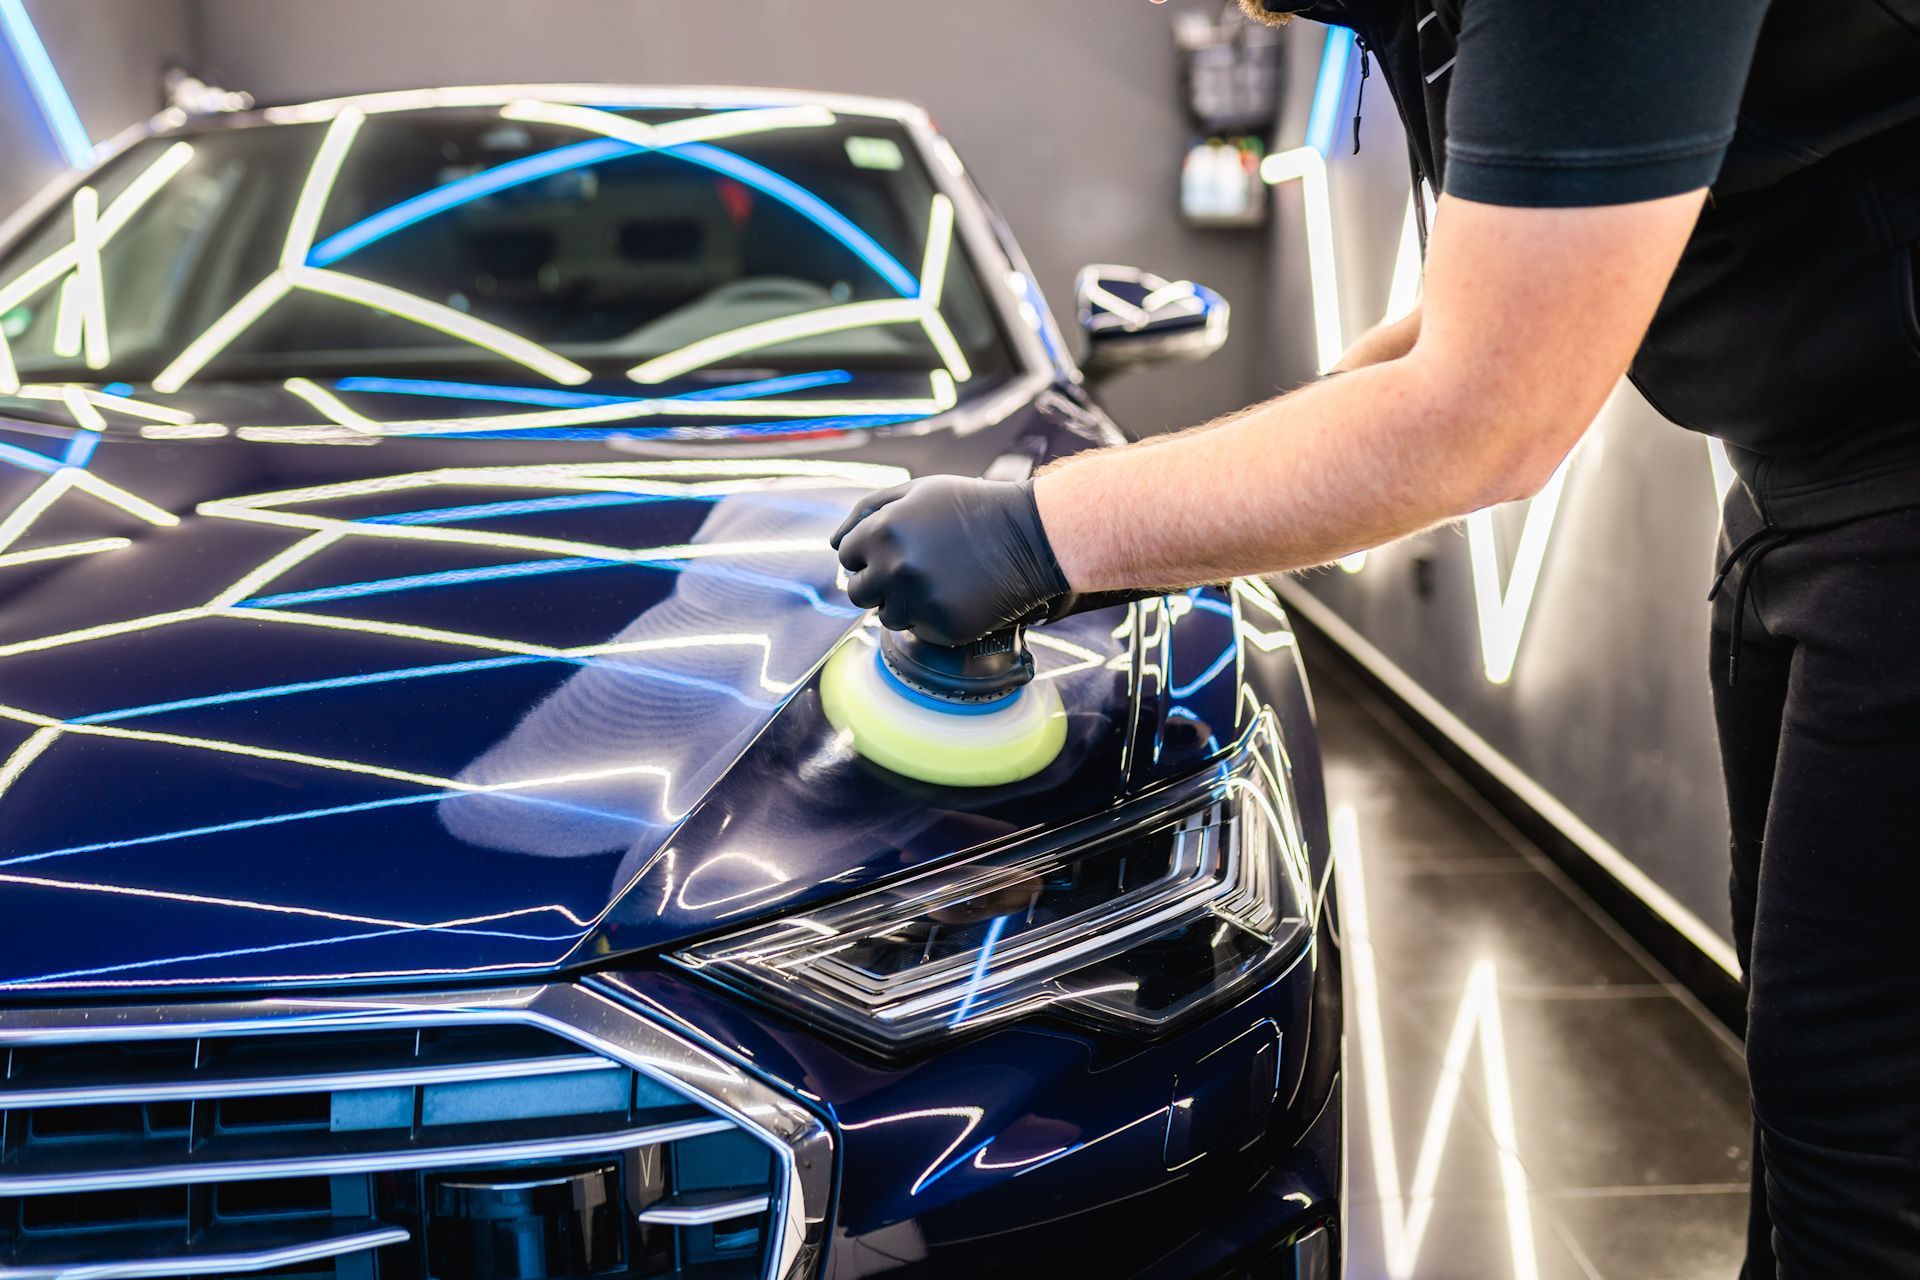 A man is polishing a blue car in a garage.